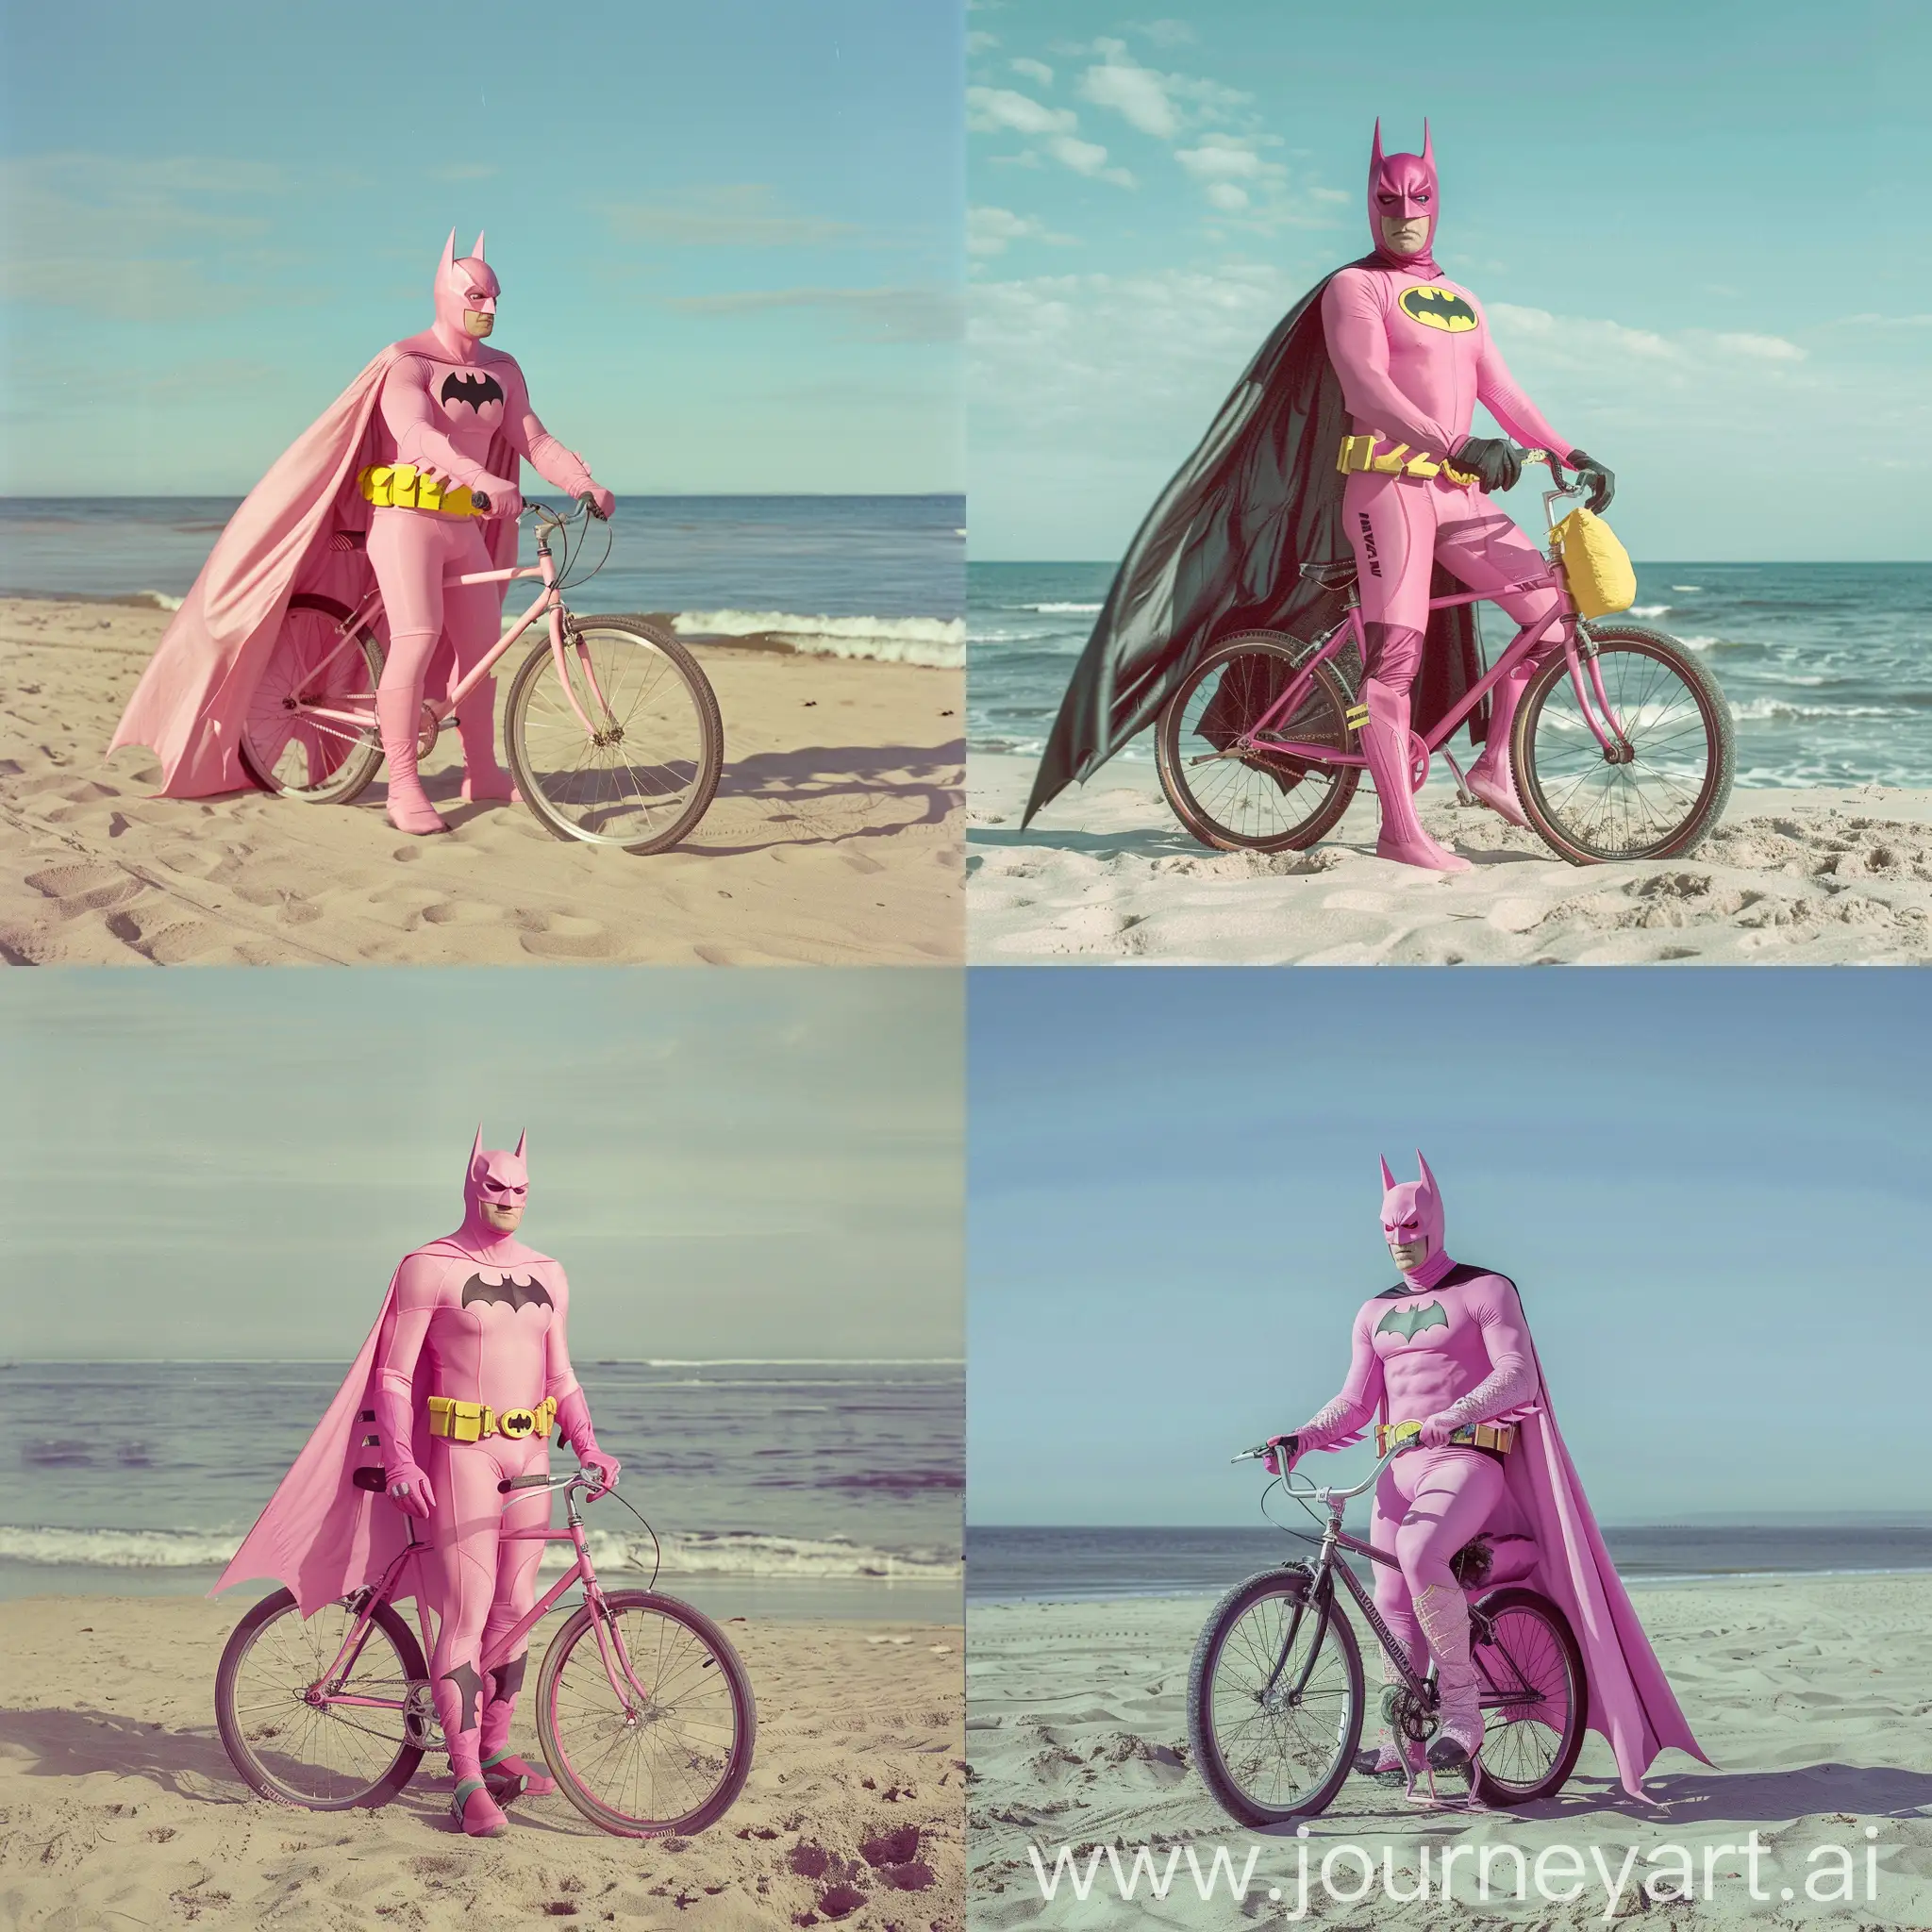 Dynamic-Batman-Figurine-Cycling-Along-the-Shore